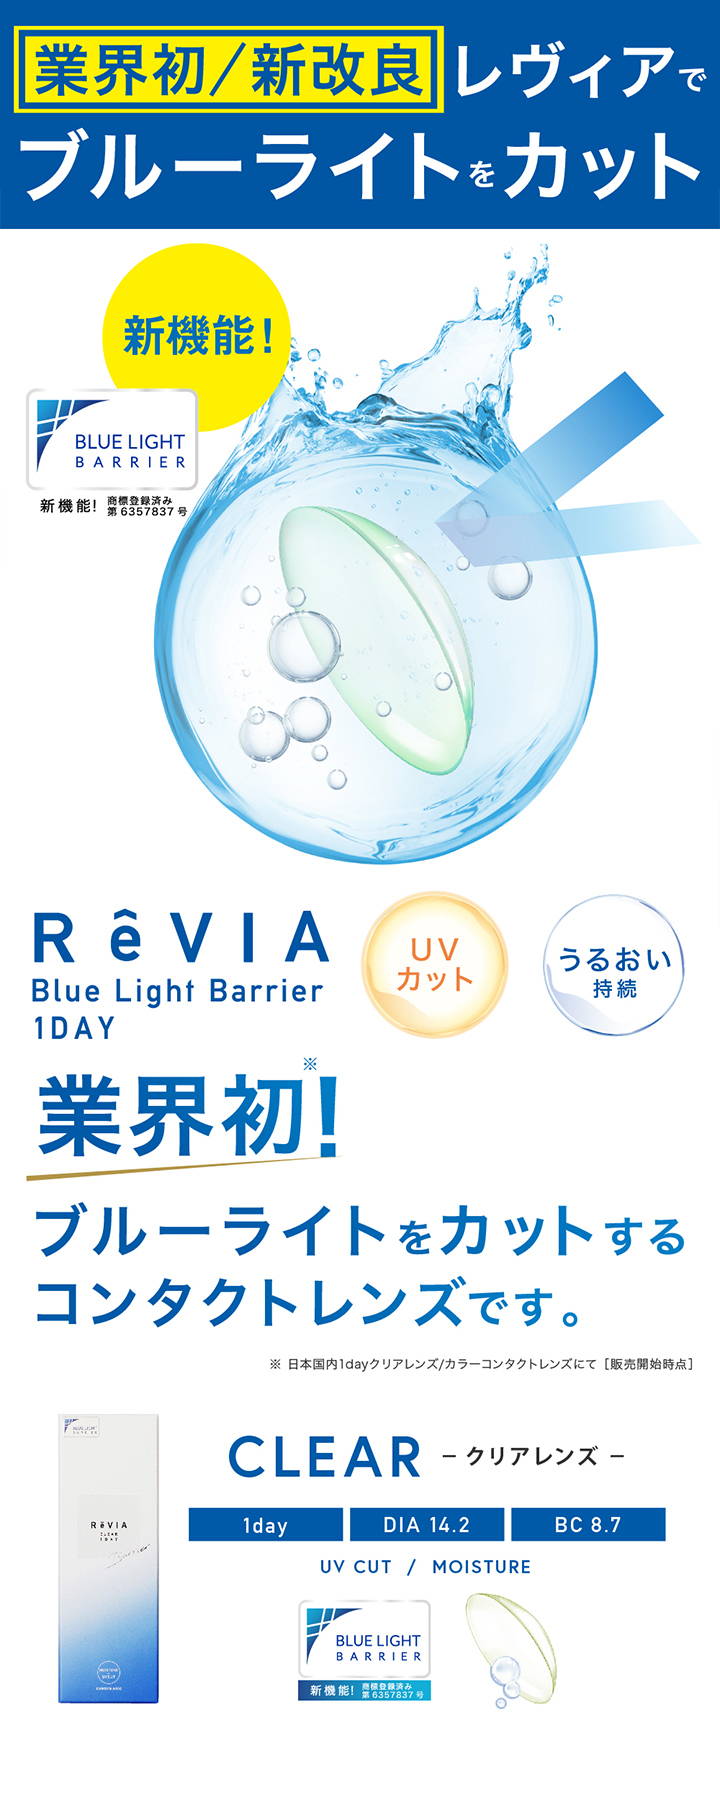 業界初/新改良のレヴィアでブルーライトをカット,レヴィア ブルーライトバリアワンデー,UVカット,うるおい持続,業界初!ブルーライトをカットするコンタクトレンズです。,クリアレンズ,1day(ワンデー),DIA14.2mm,BC8.7mm|レヴィア ブルーライトバリアワンデー(ReVIA Blue Light Barrier 1DAY) コンタクトレンズ